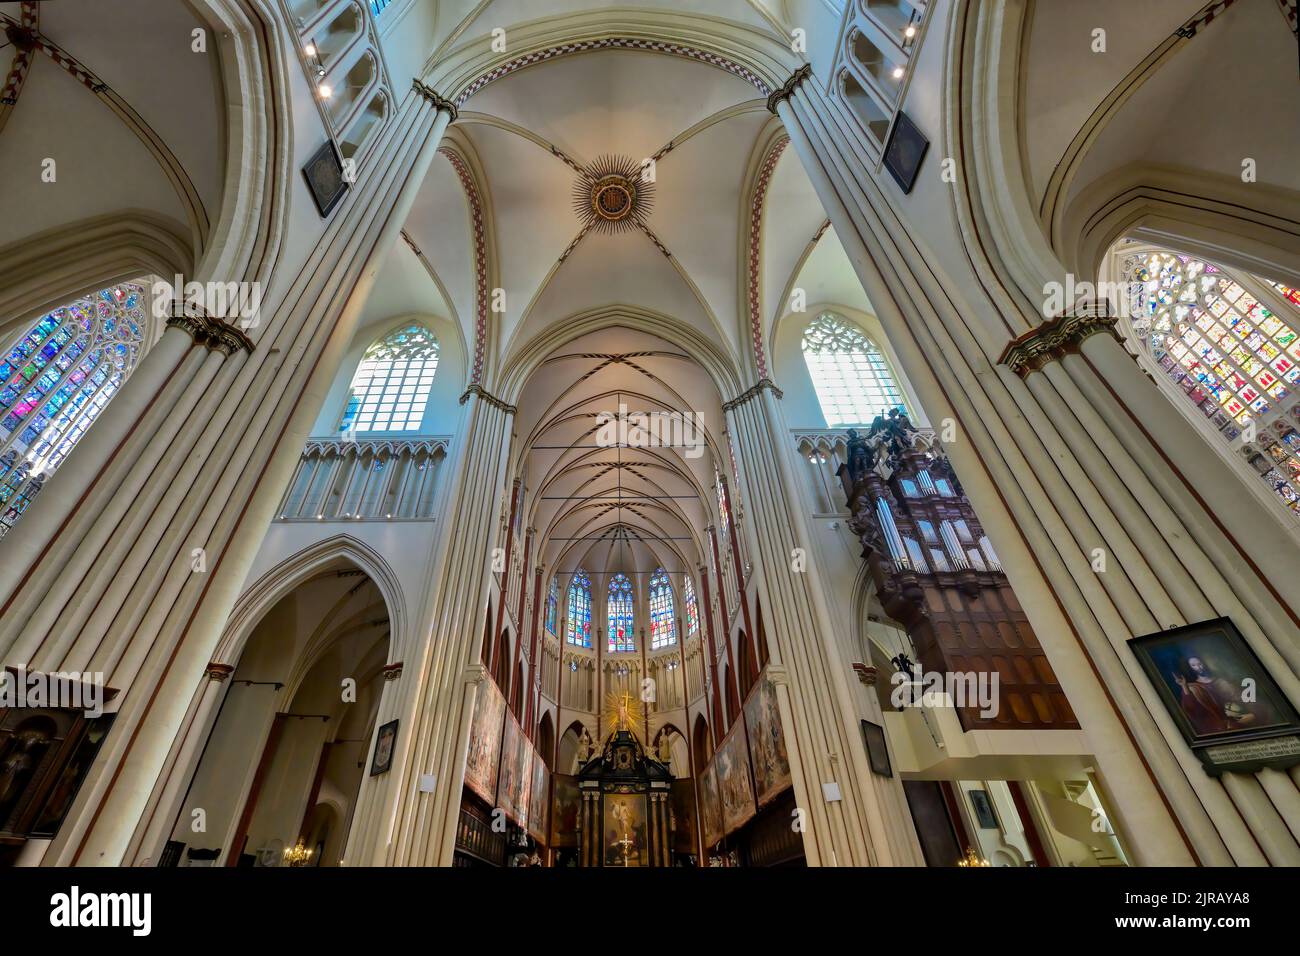 Saint Salvator Cathedral, Interior, Bruges, Belgium Stock Photo